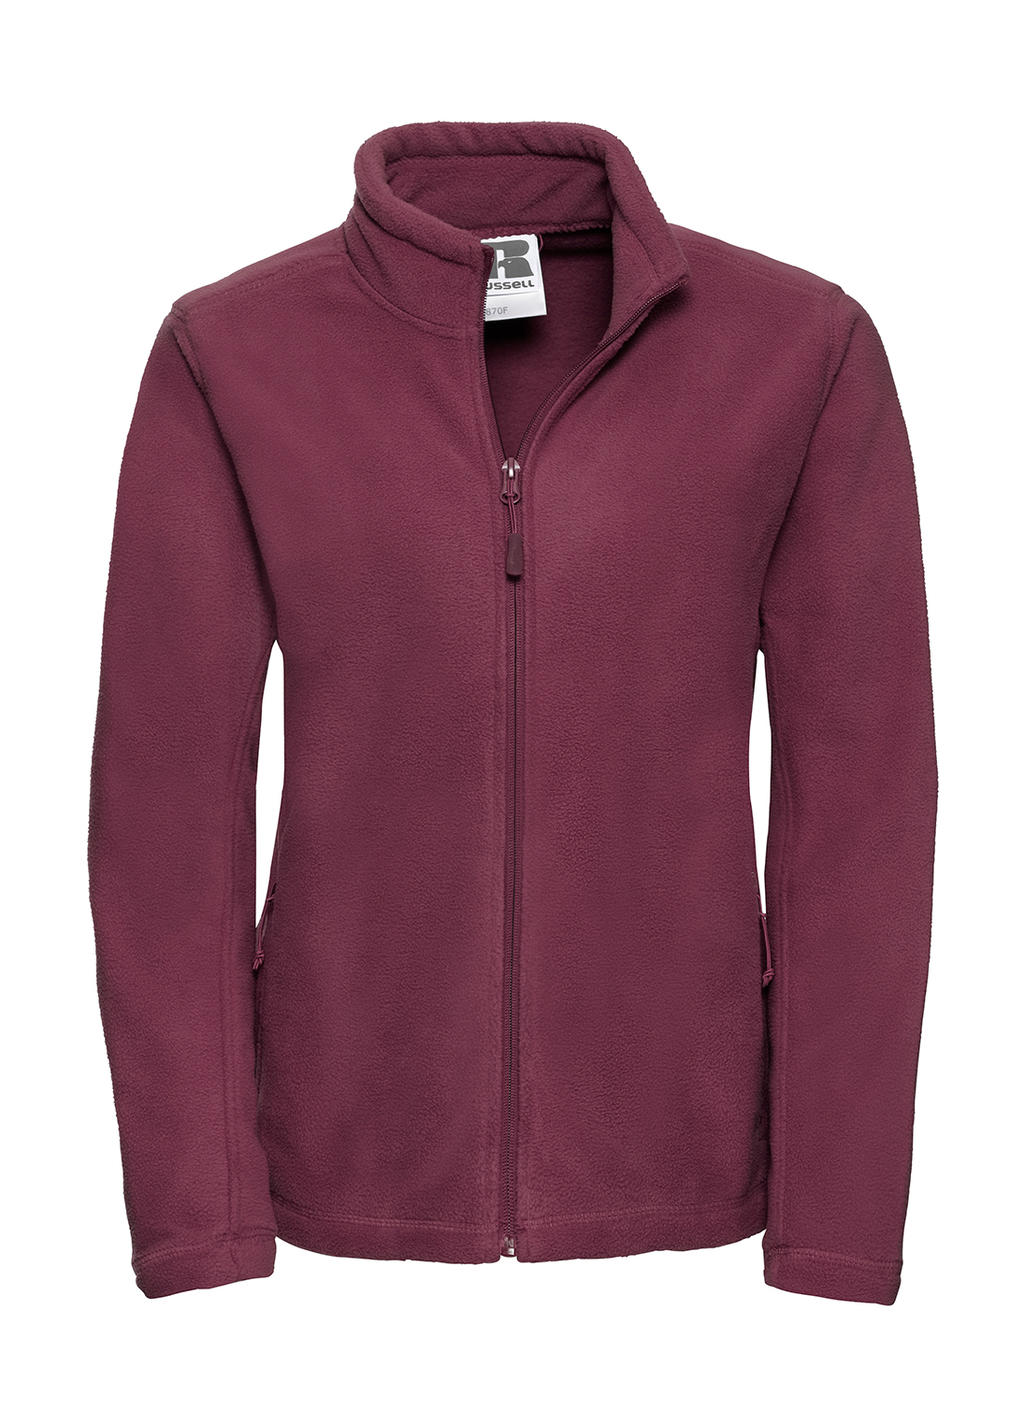  Ladies Full Zip Outdoor Fleece in Farbe Burgundy